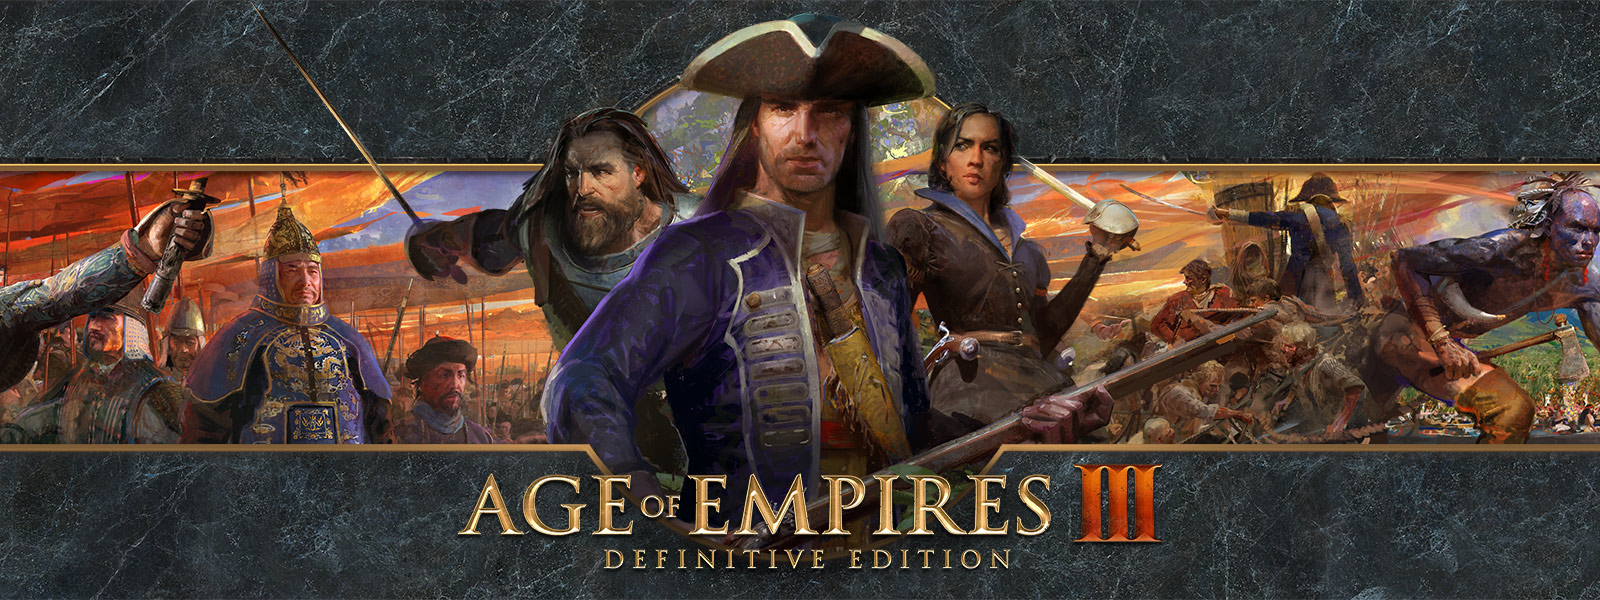 Логотип Age of Empires III: Definitive Edition на фоне с изображением полководцев и их армий